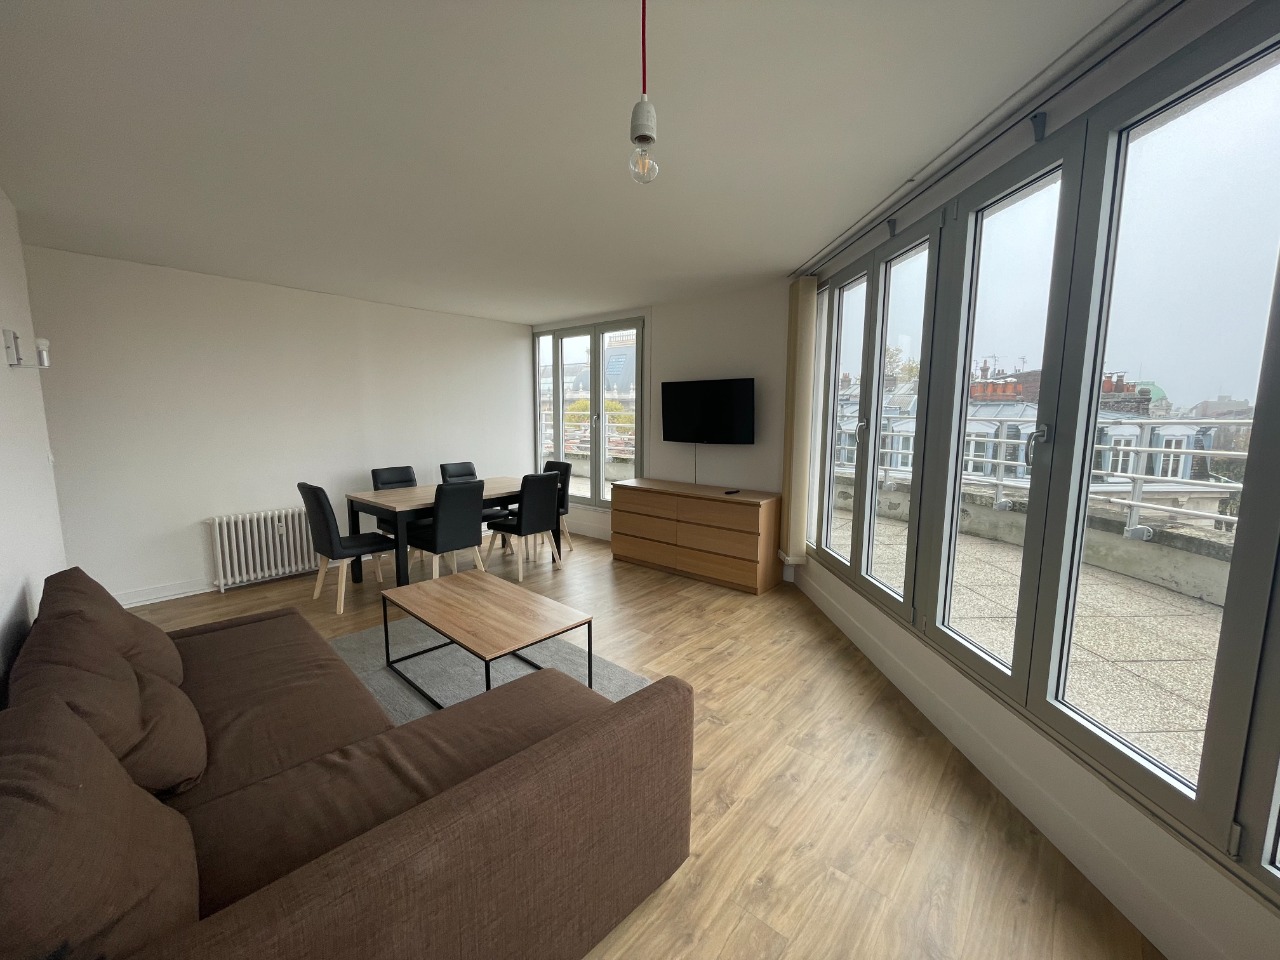 Lille republique t4 meuble de 90m2 balcon et parking Photo 3 - JLW Immobilier